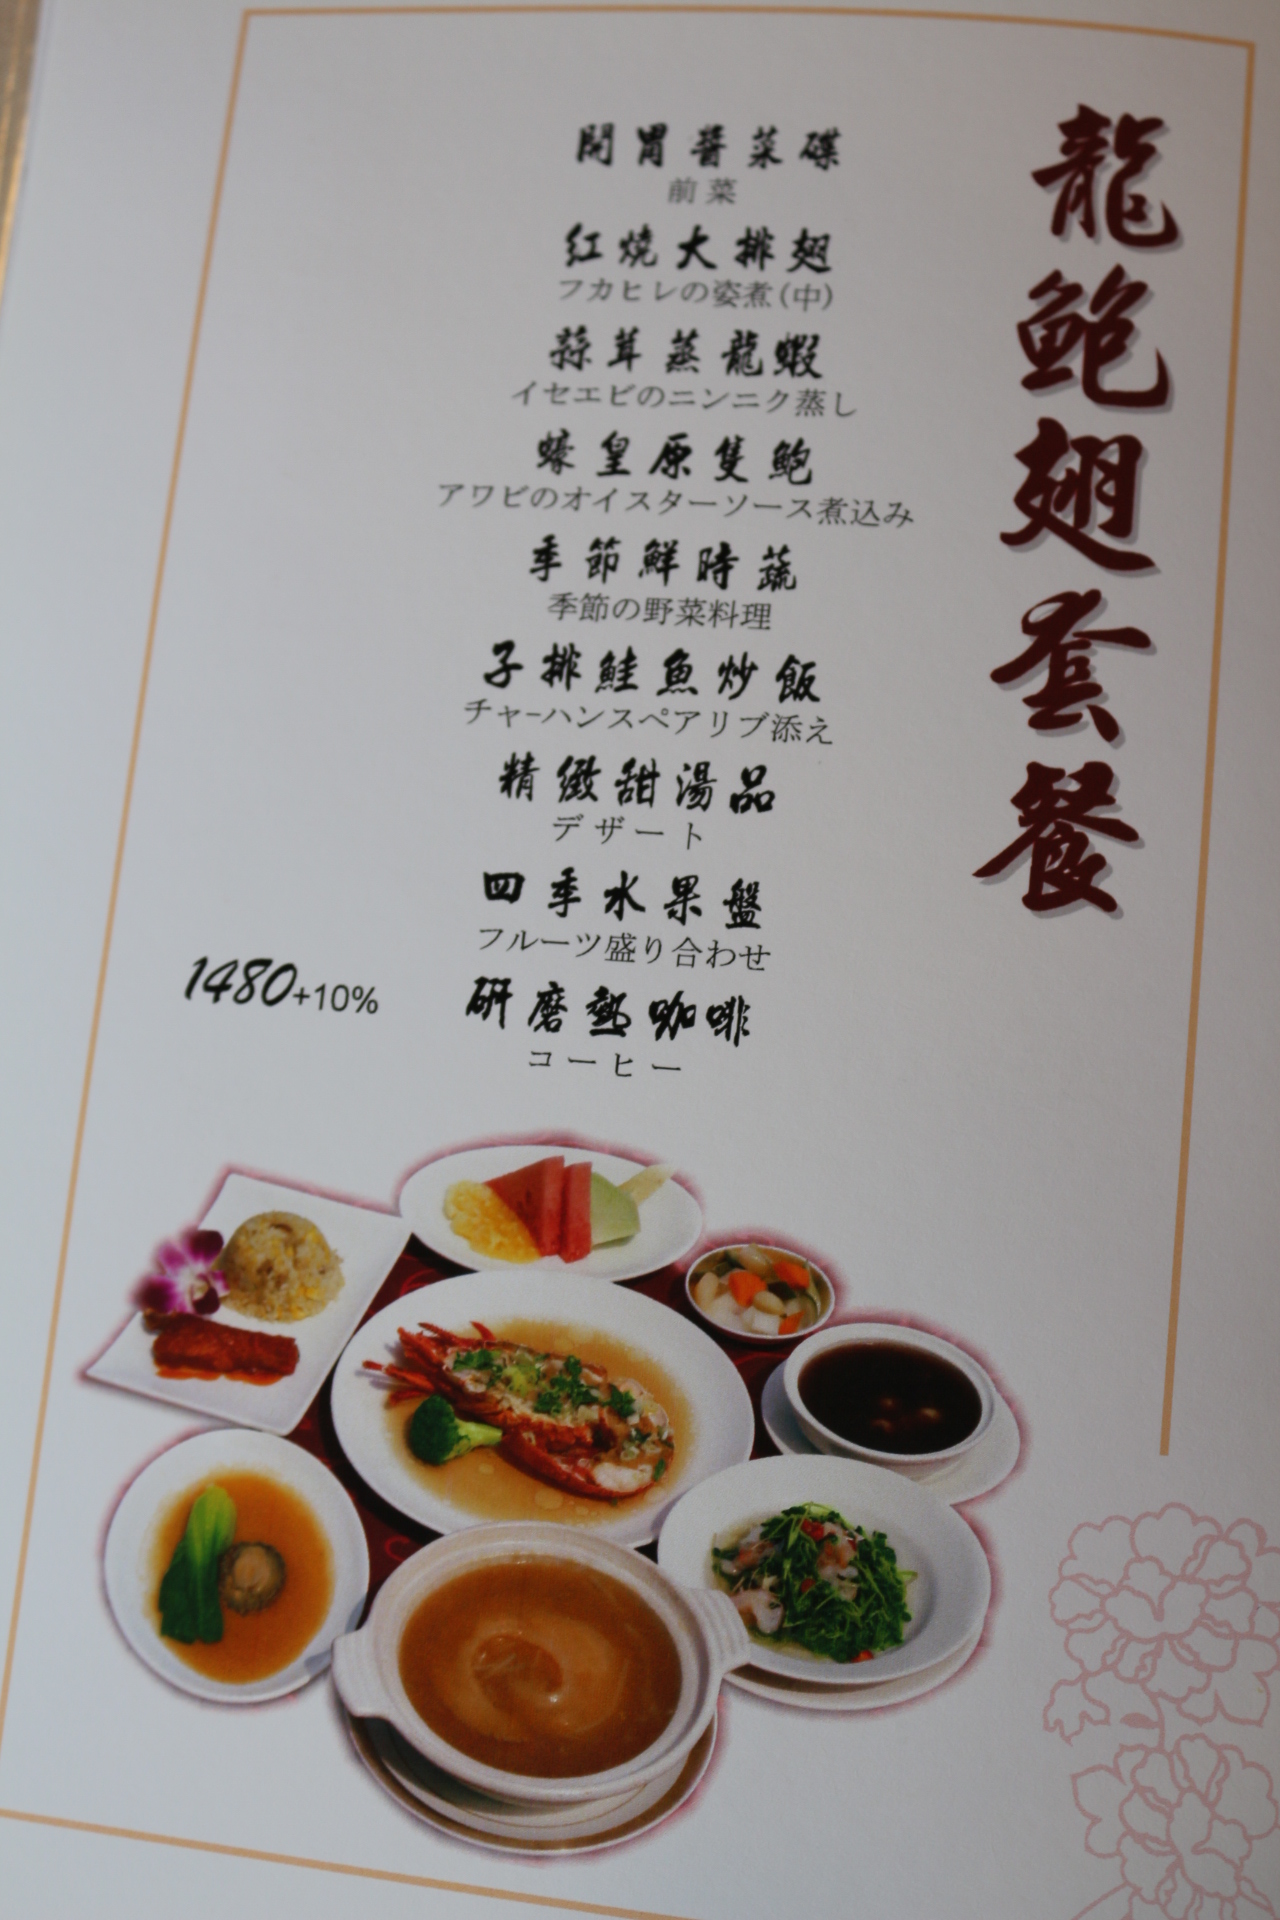 金滿庭 menu